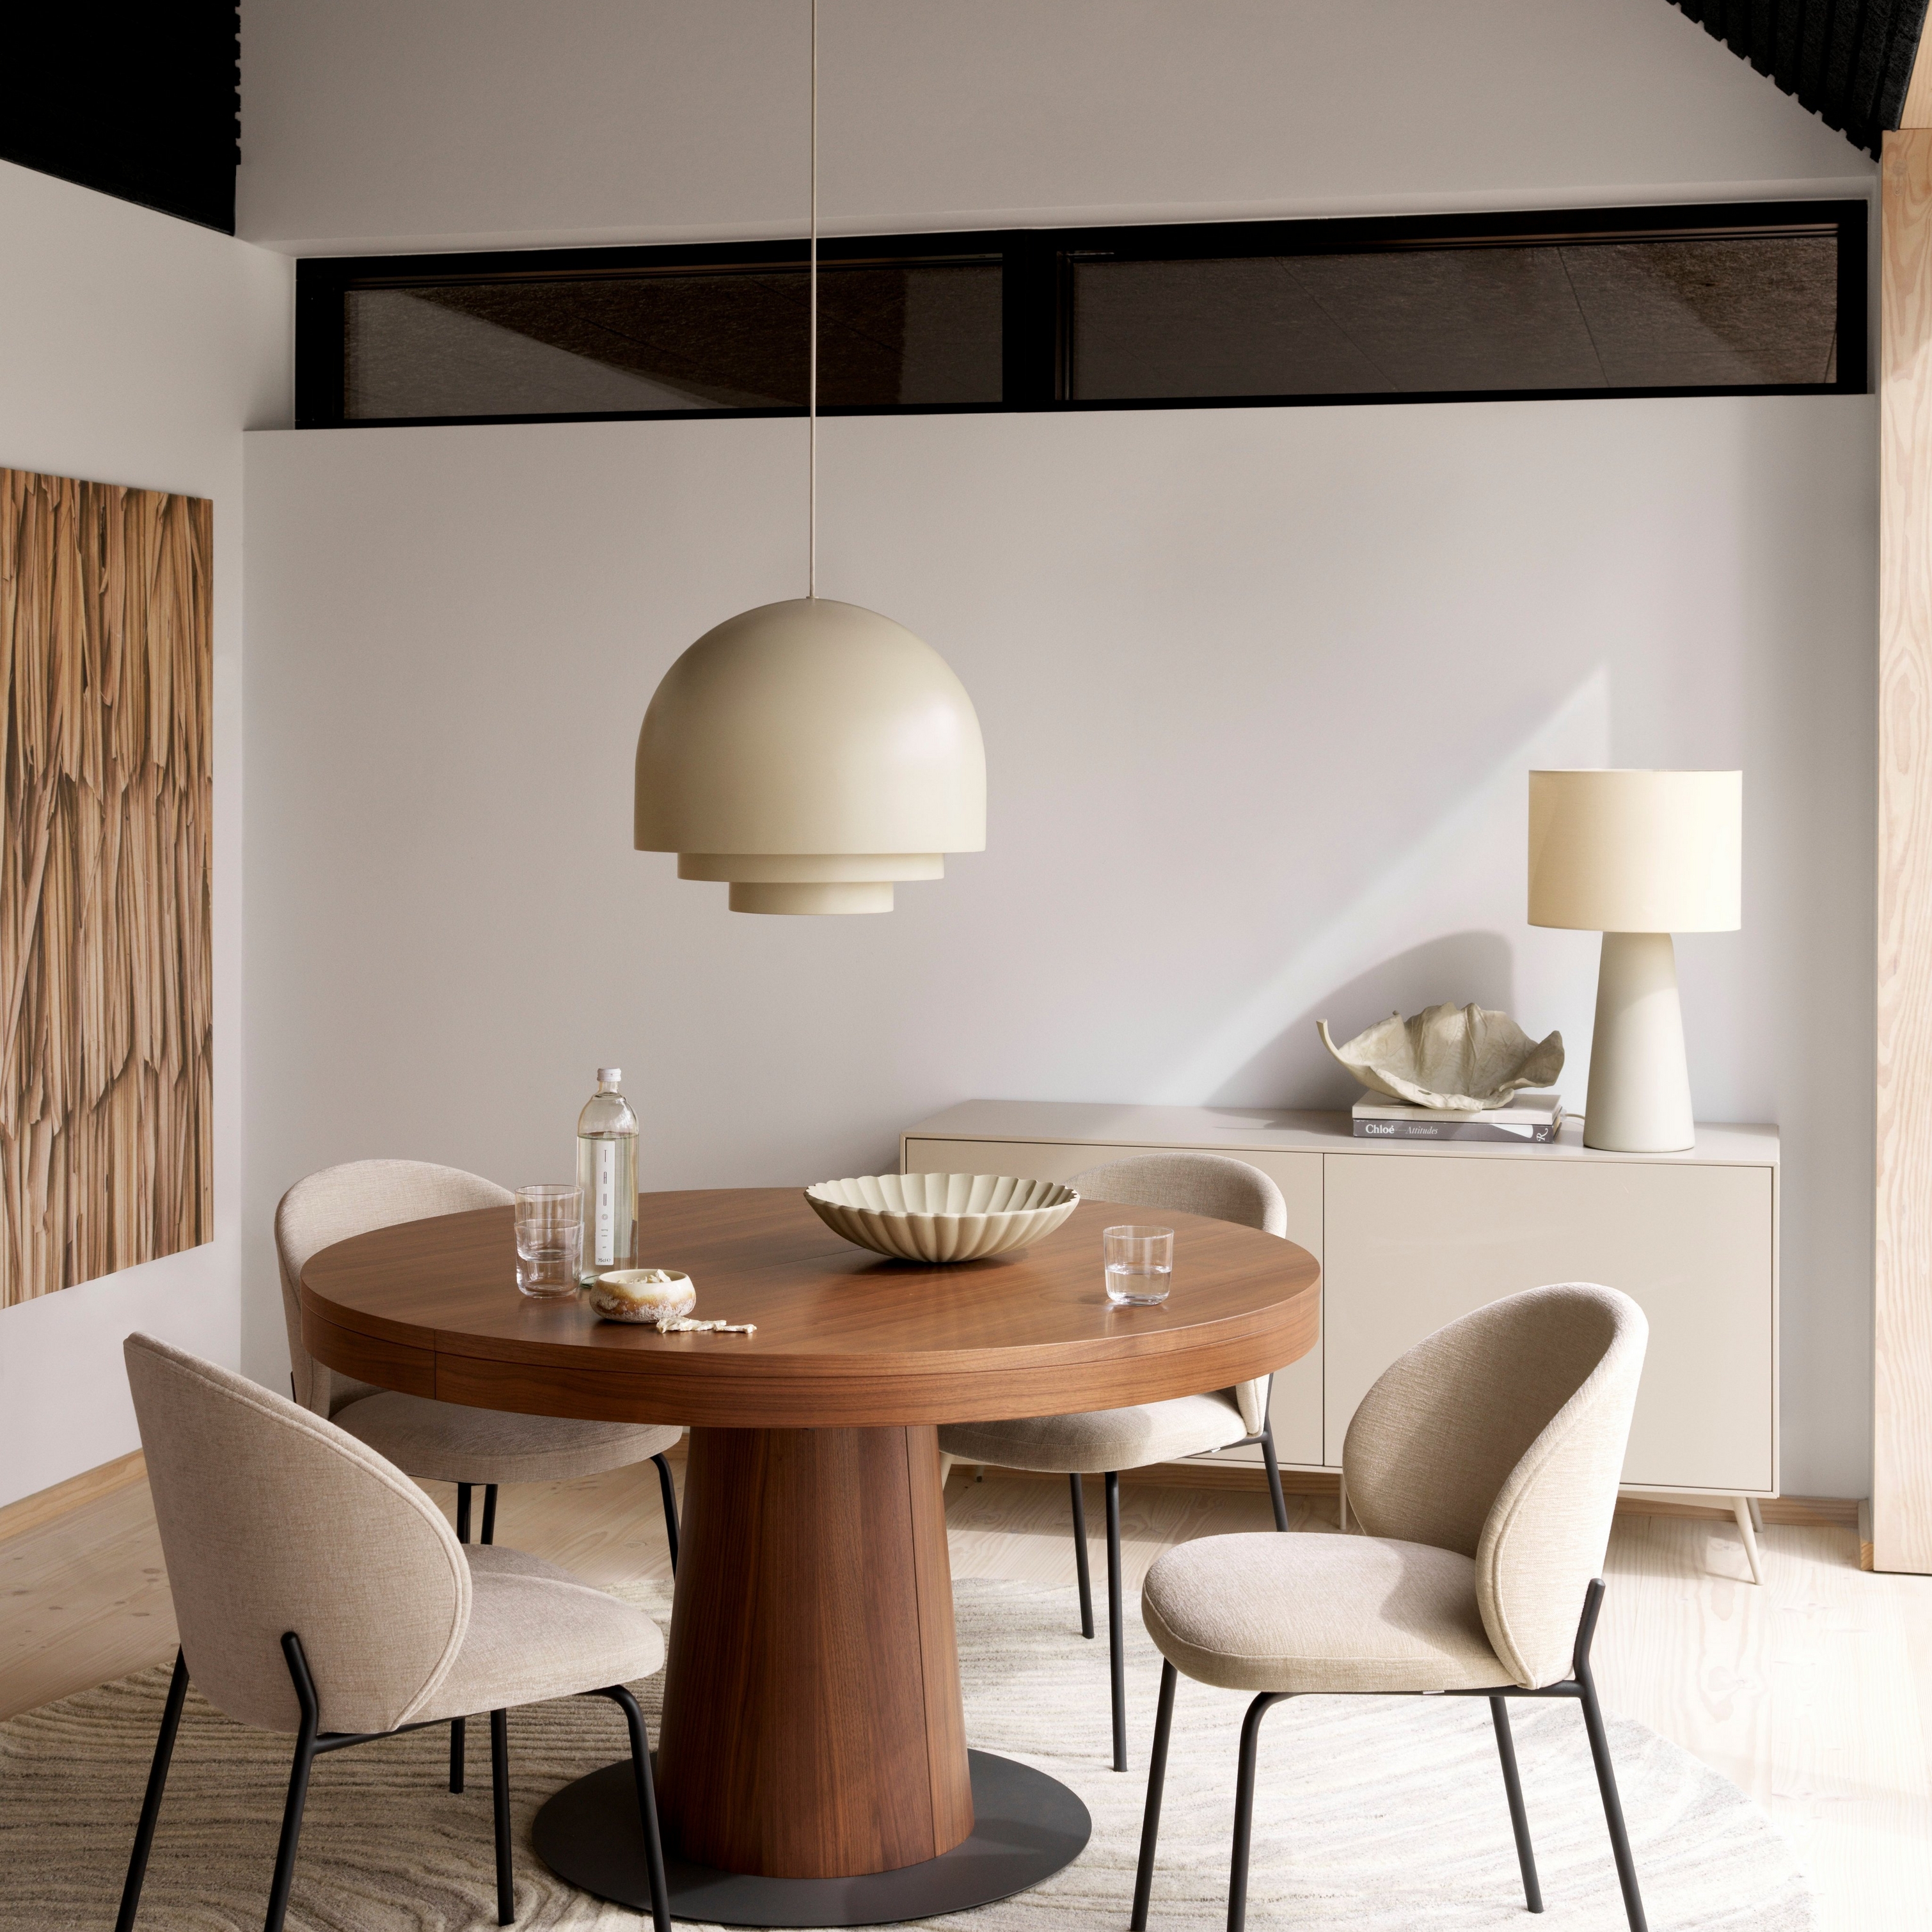 现代餐厅中搭配圆形木质 Granada 桌、米色 Princeton 椅、吊灯和乳白色地毯。